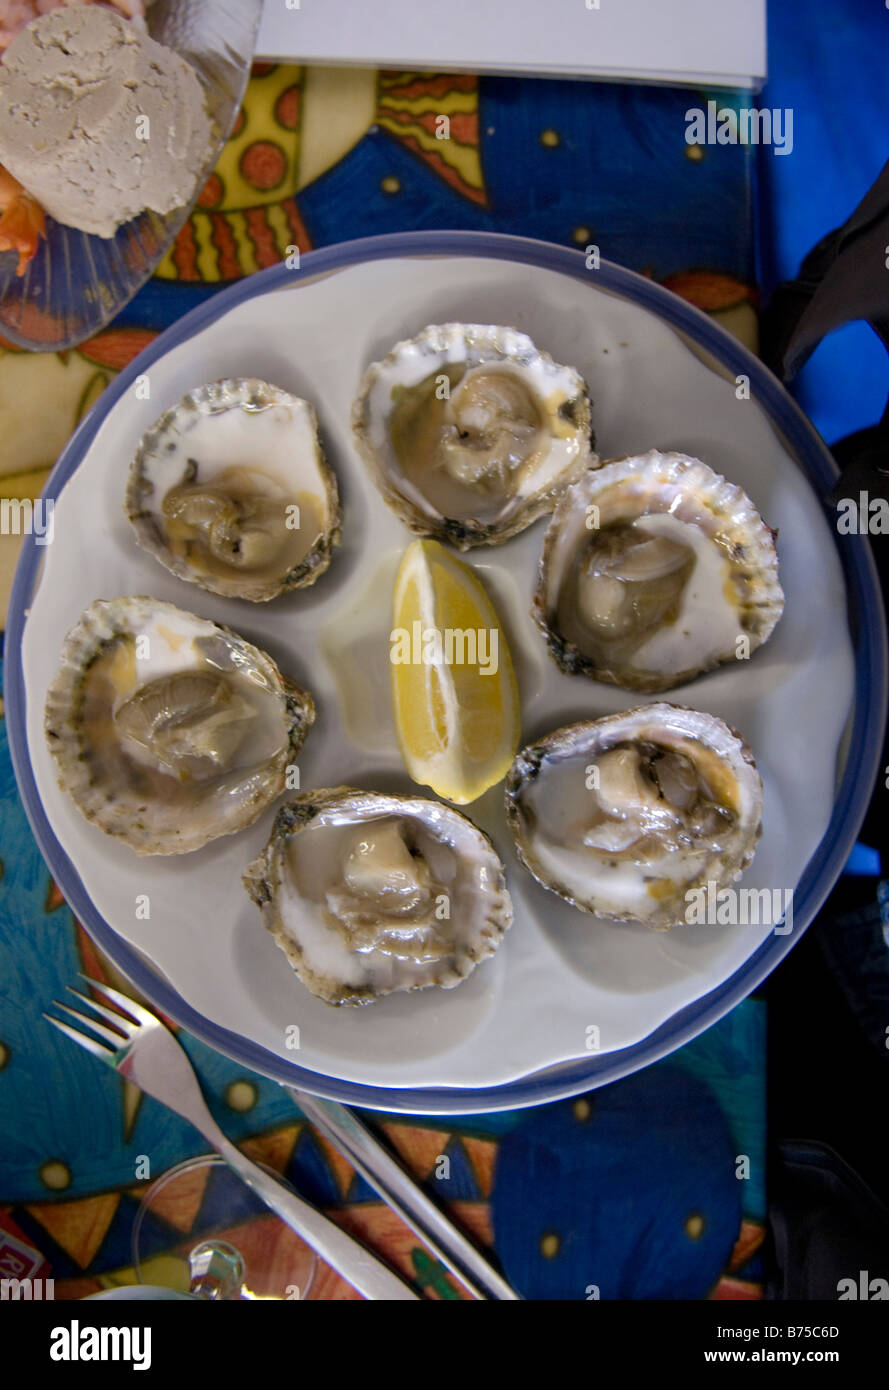 Austern und Zitrone auf Platte Mersea Essex English UK am Meer Fisch und Meeresfrüchte Stockfoto